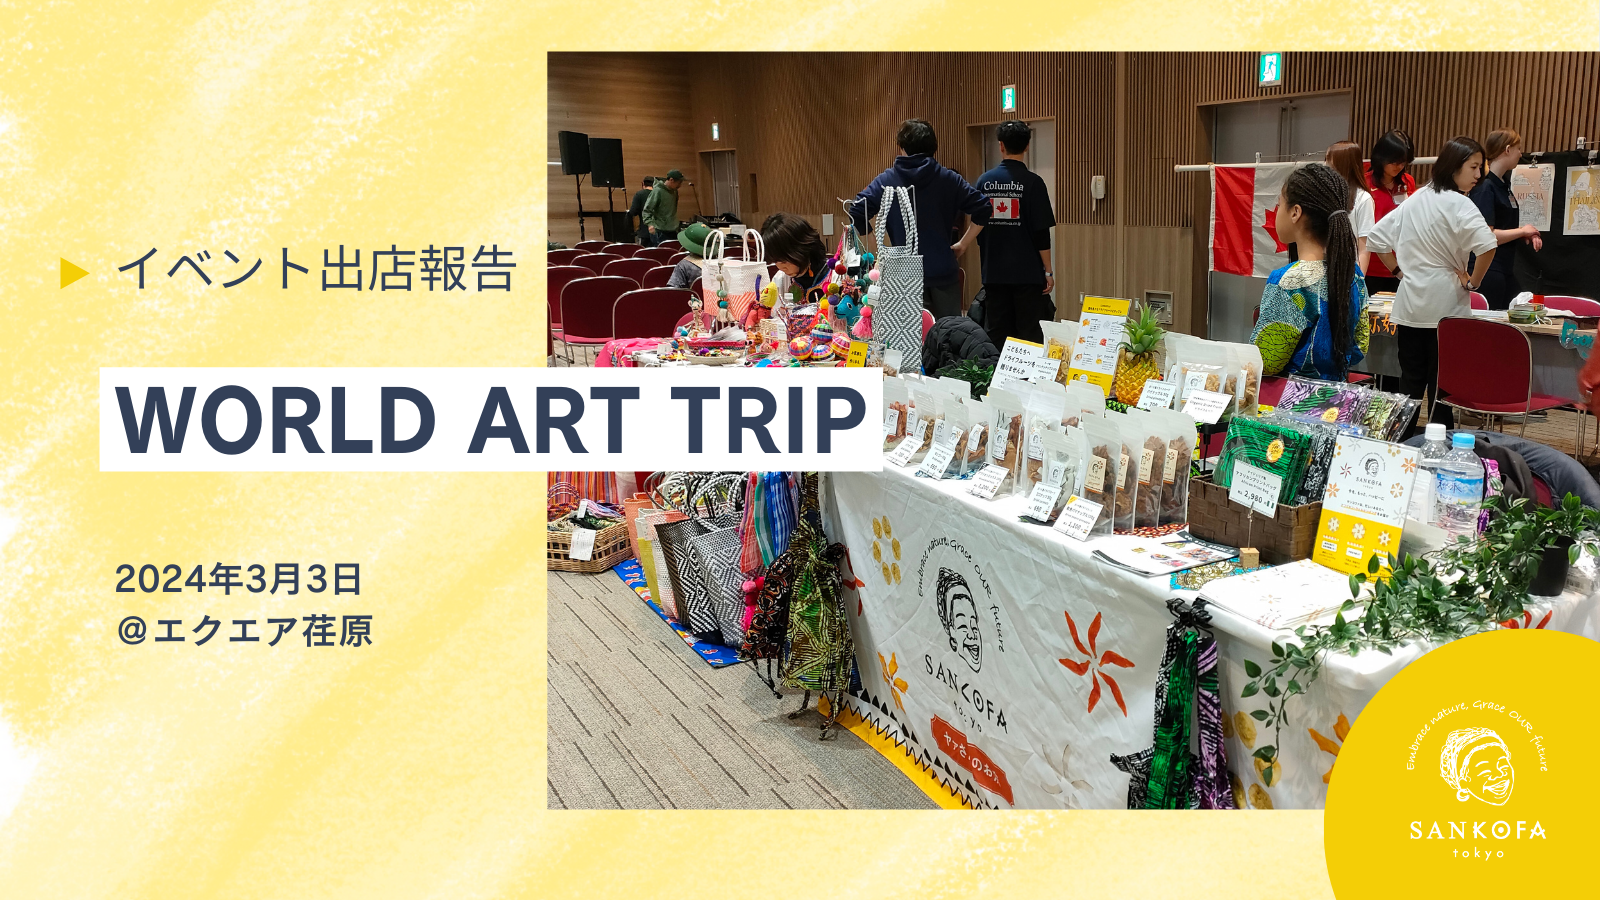 WORLD ART TRIP出店レポート：世界の魅力を感じる素晴らしい交流